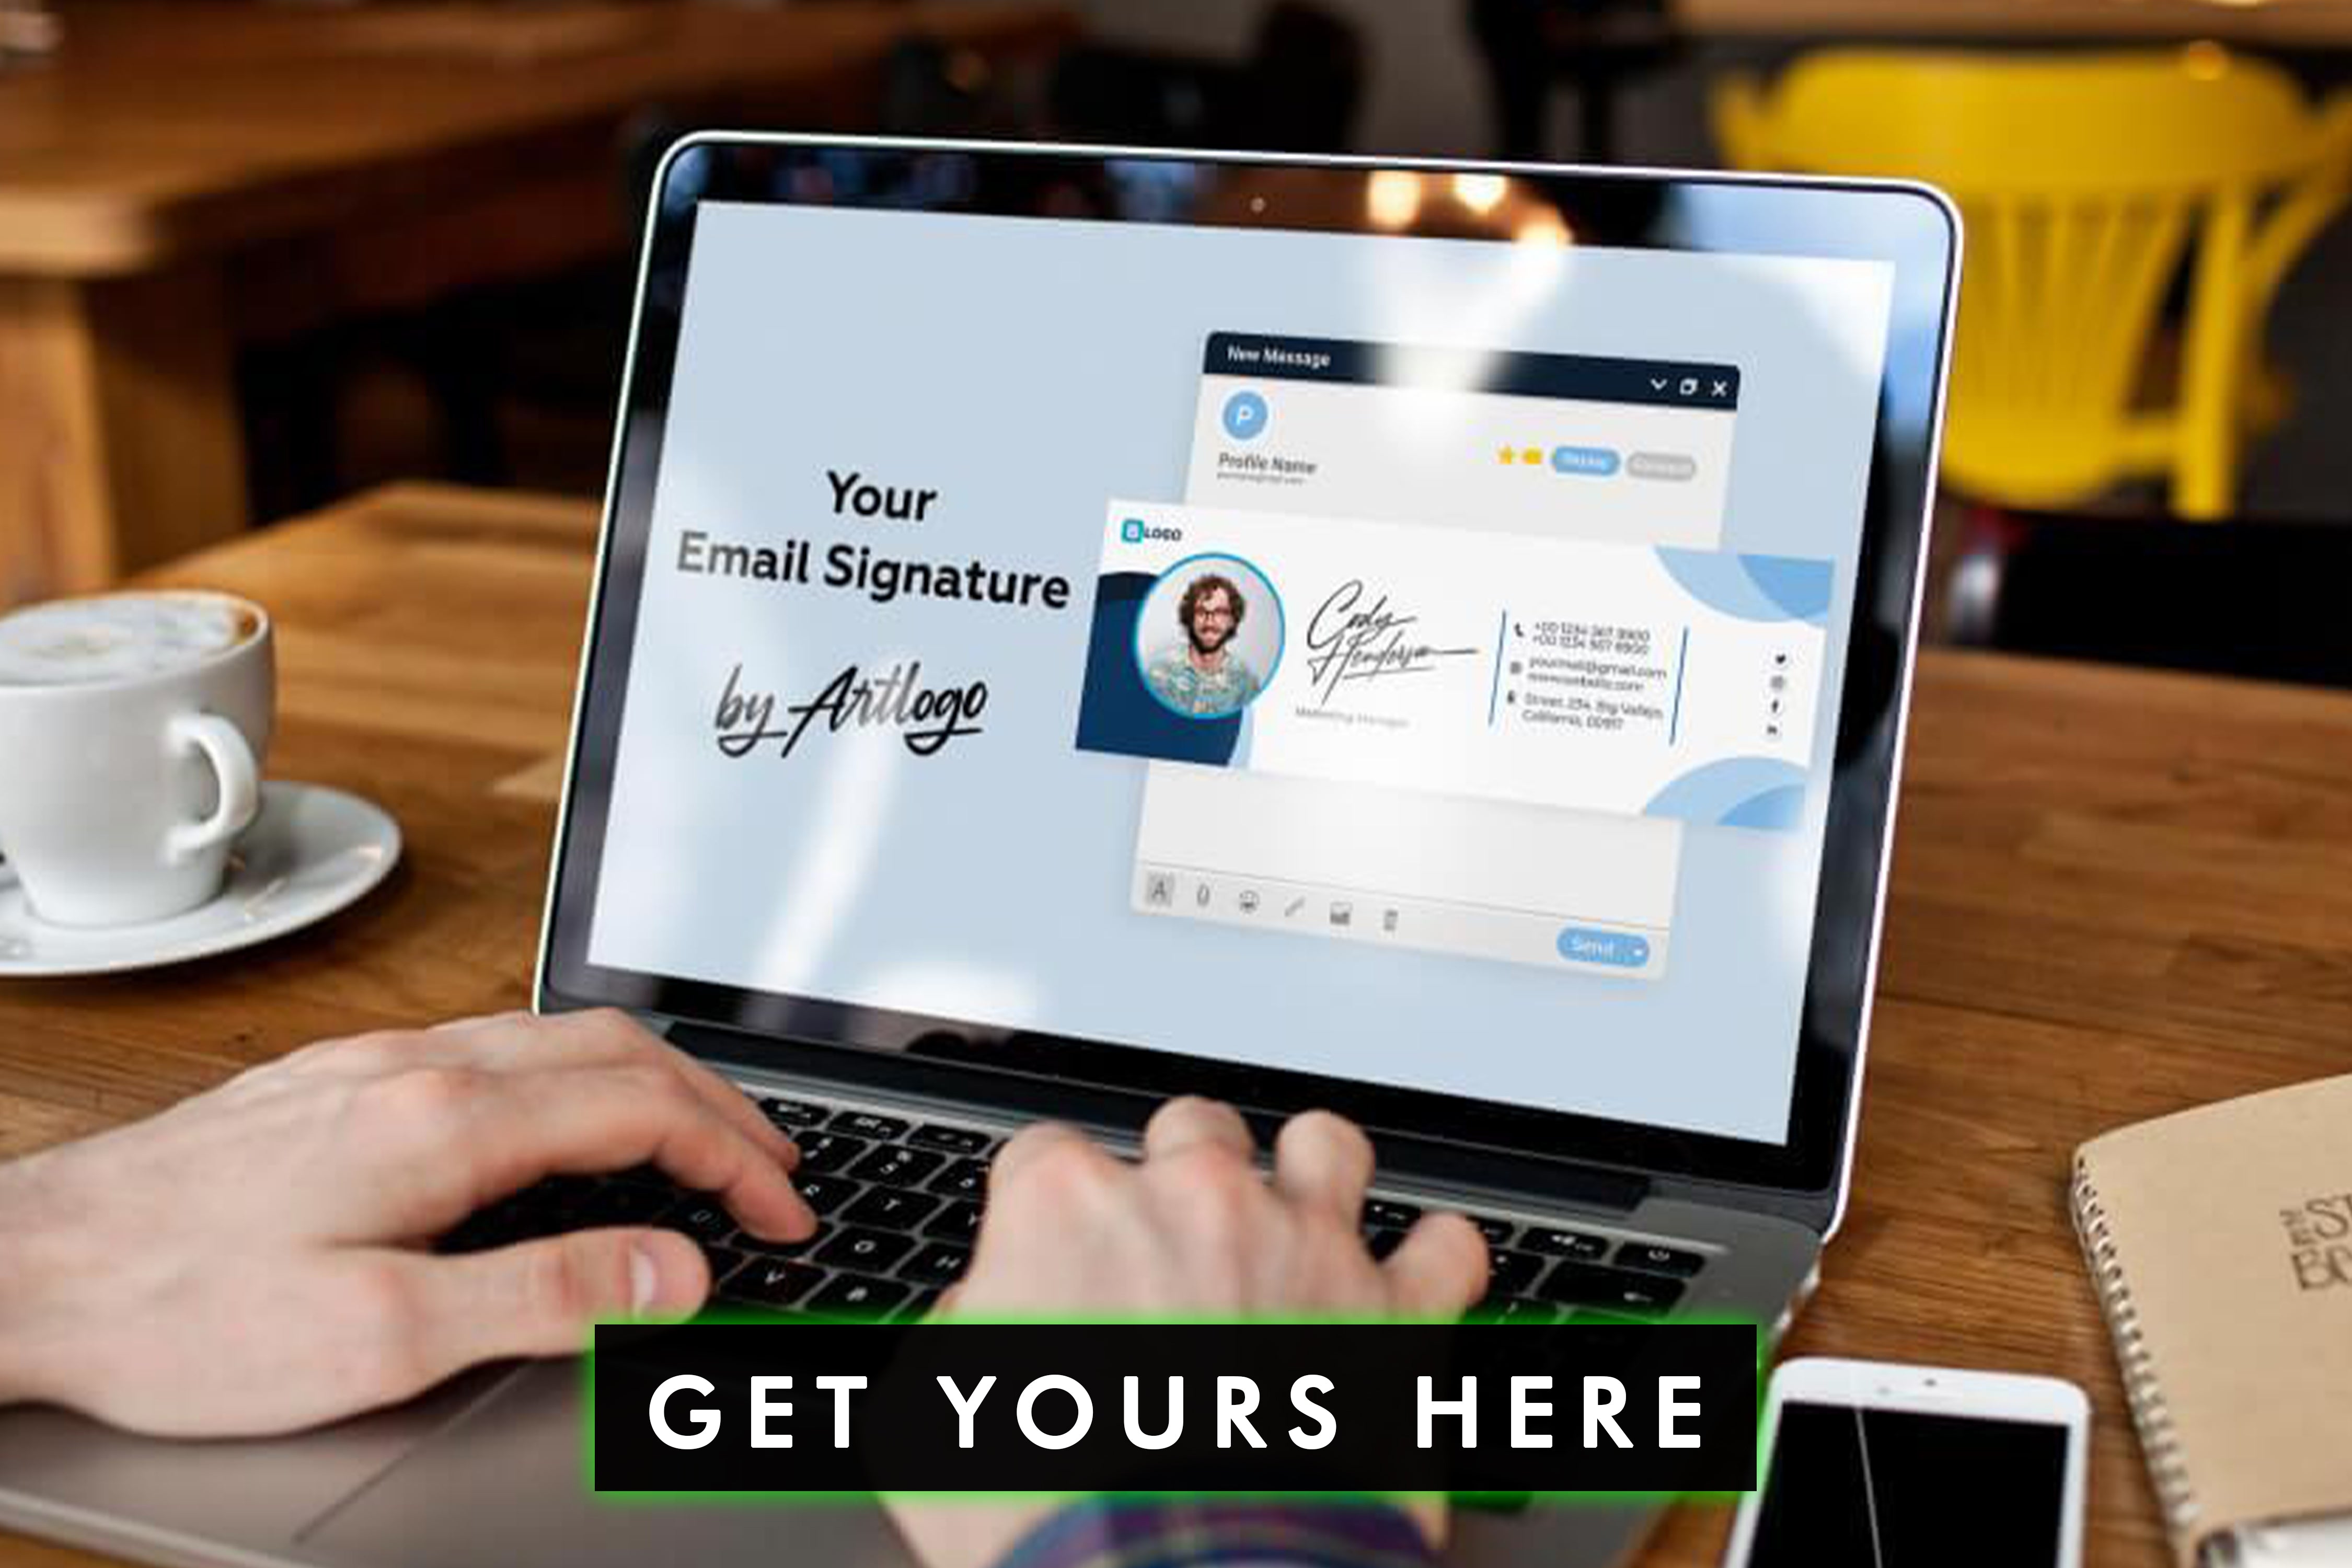 Zlepšete image své značky a zajistěte konzistenci pomocí standardizovaného firemního e-mailového podpisu, který reprezentuje hodnoty a identitu vaší značky.